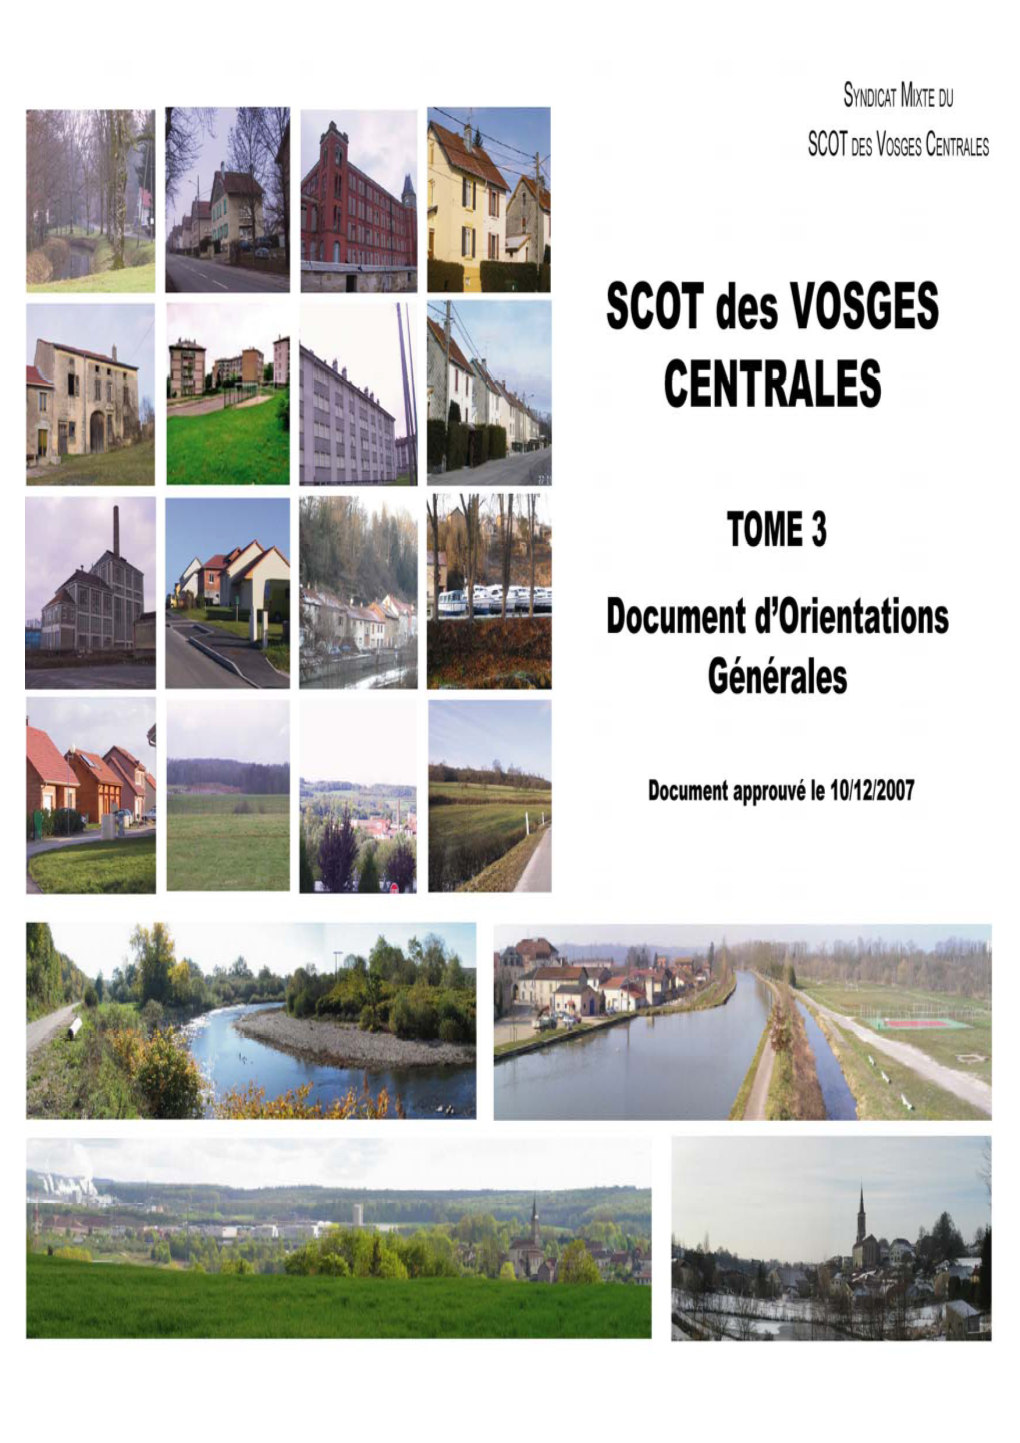 DOG Scot Vosges Centrales 2007 12 10